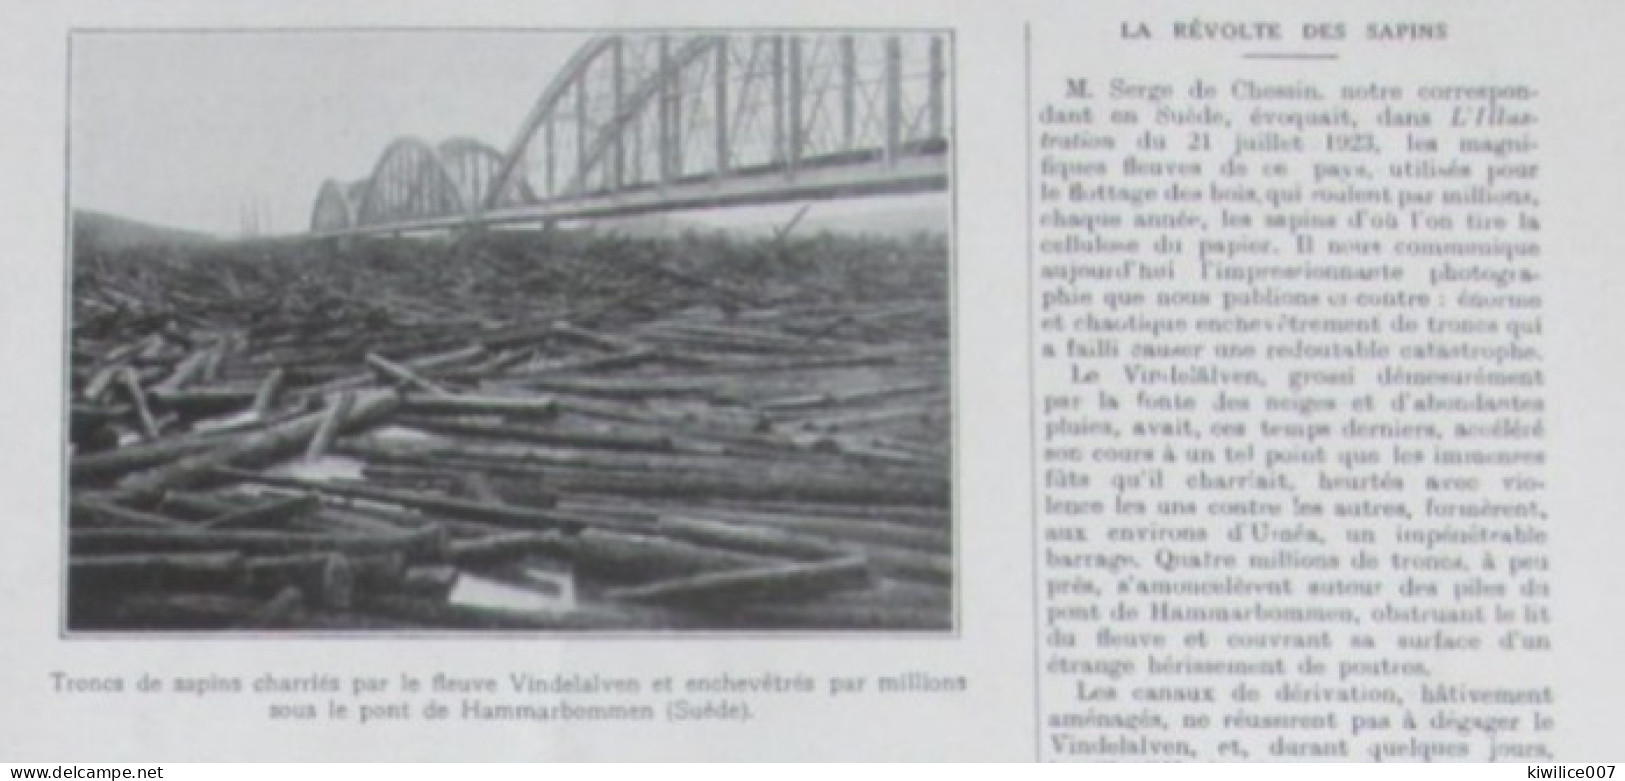 1924  Suede Sweden   Hammarbommen  Pont  Bridge  TRONCS DE SAPINS BOIS BUCHERONNAGE - Non Classificati